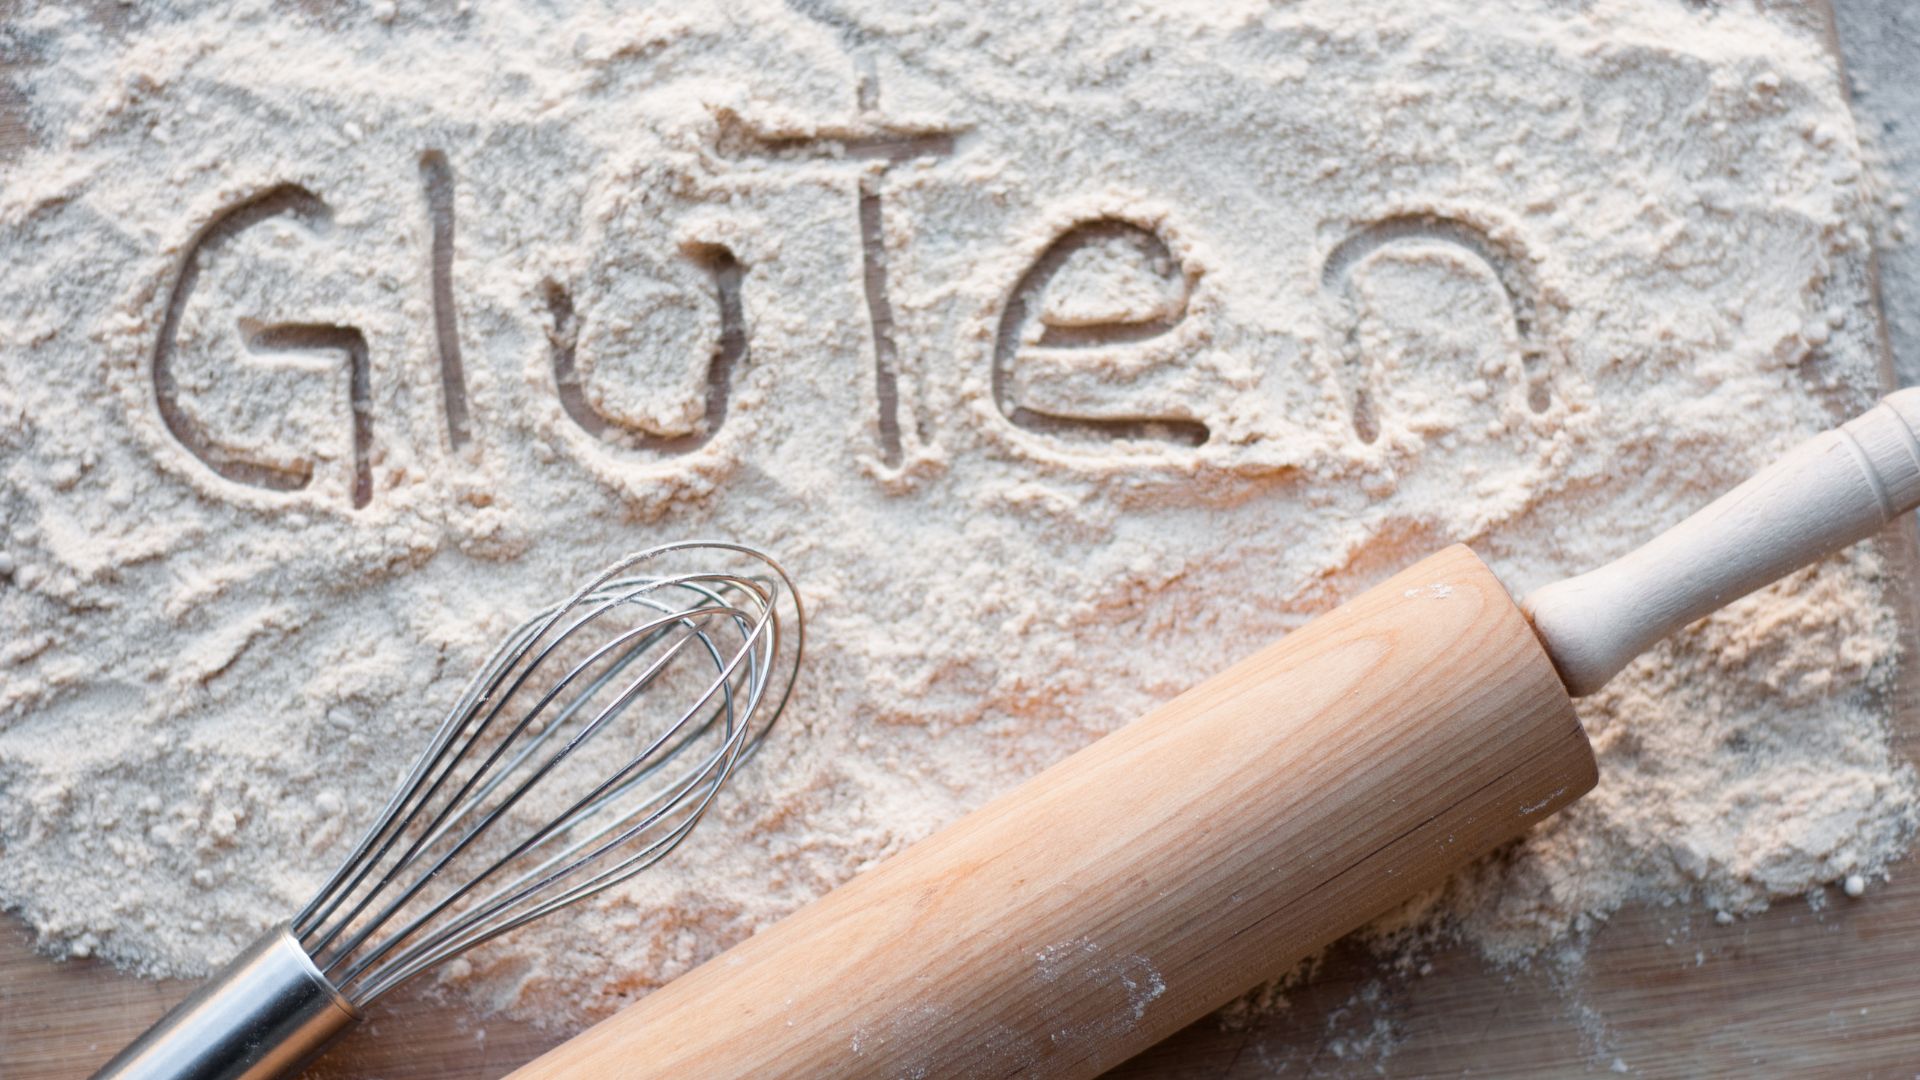 Napis gluten napisany na mące, a obok niego przedmioty do wyrabiania ciasta.